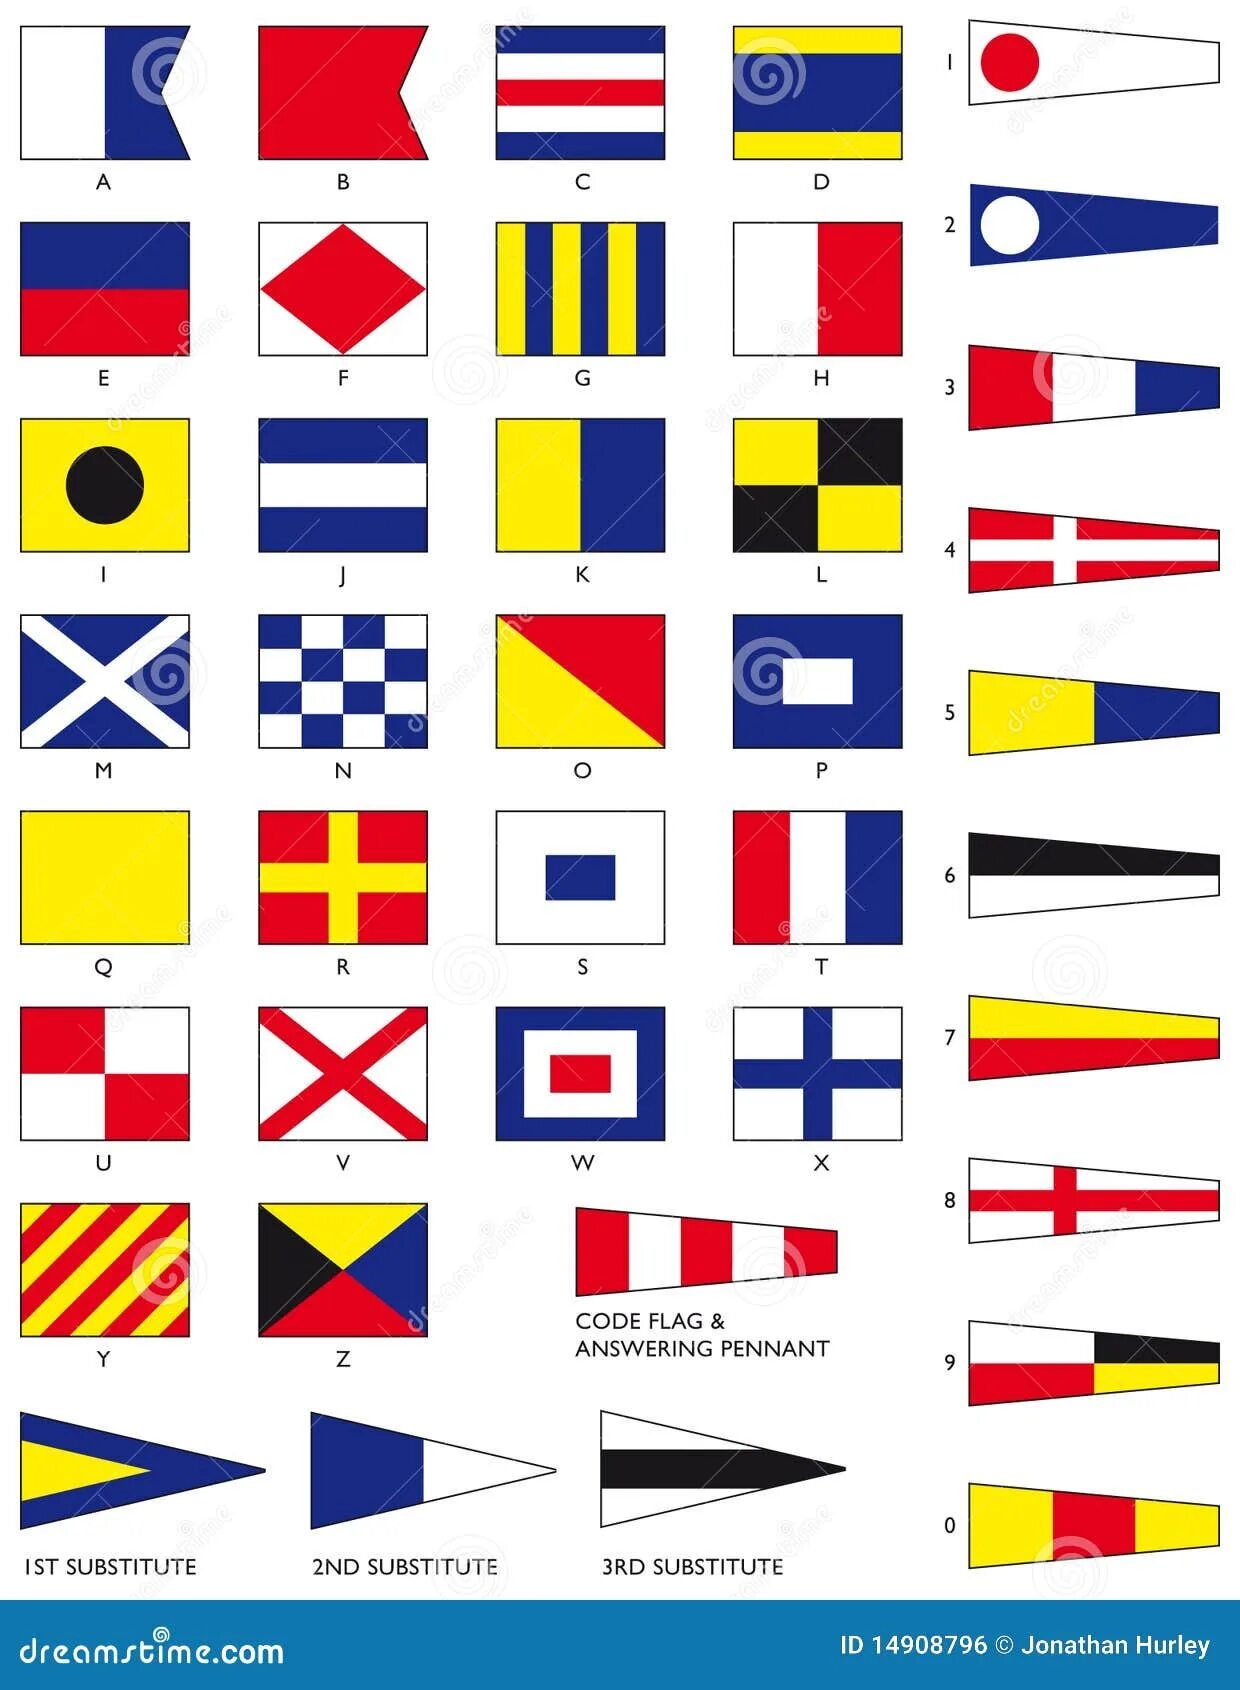 МСС-65 Международный свод сигналов. Флаги Альфа Браво Чарли. Сигнальные флаги. Морские флаги.